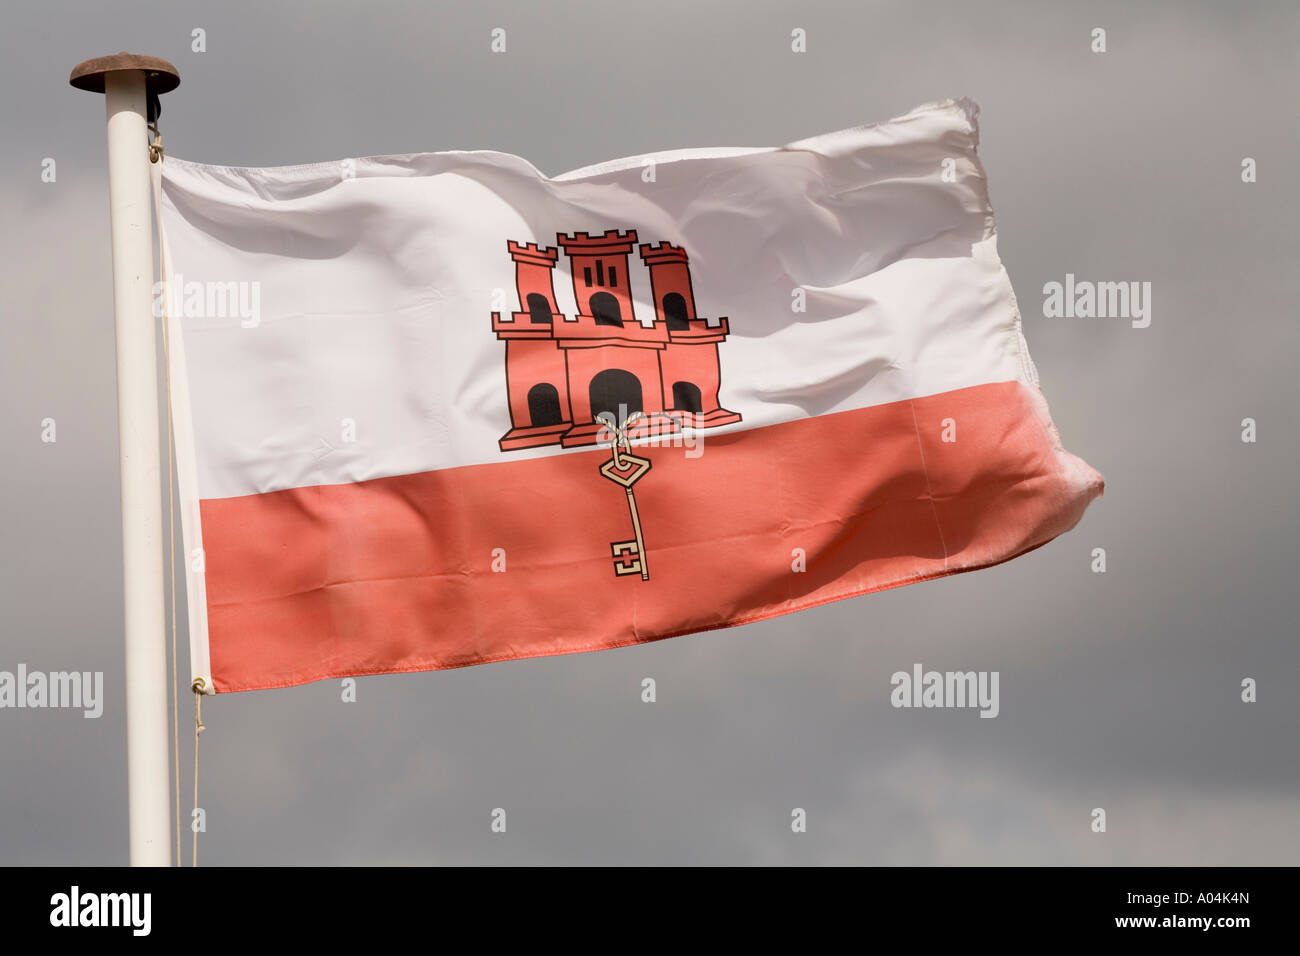 Gibraltar Gibraltar Flagge Zeigt Das Schloss Und Schlussel Stockfotografie Alamy